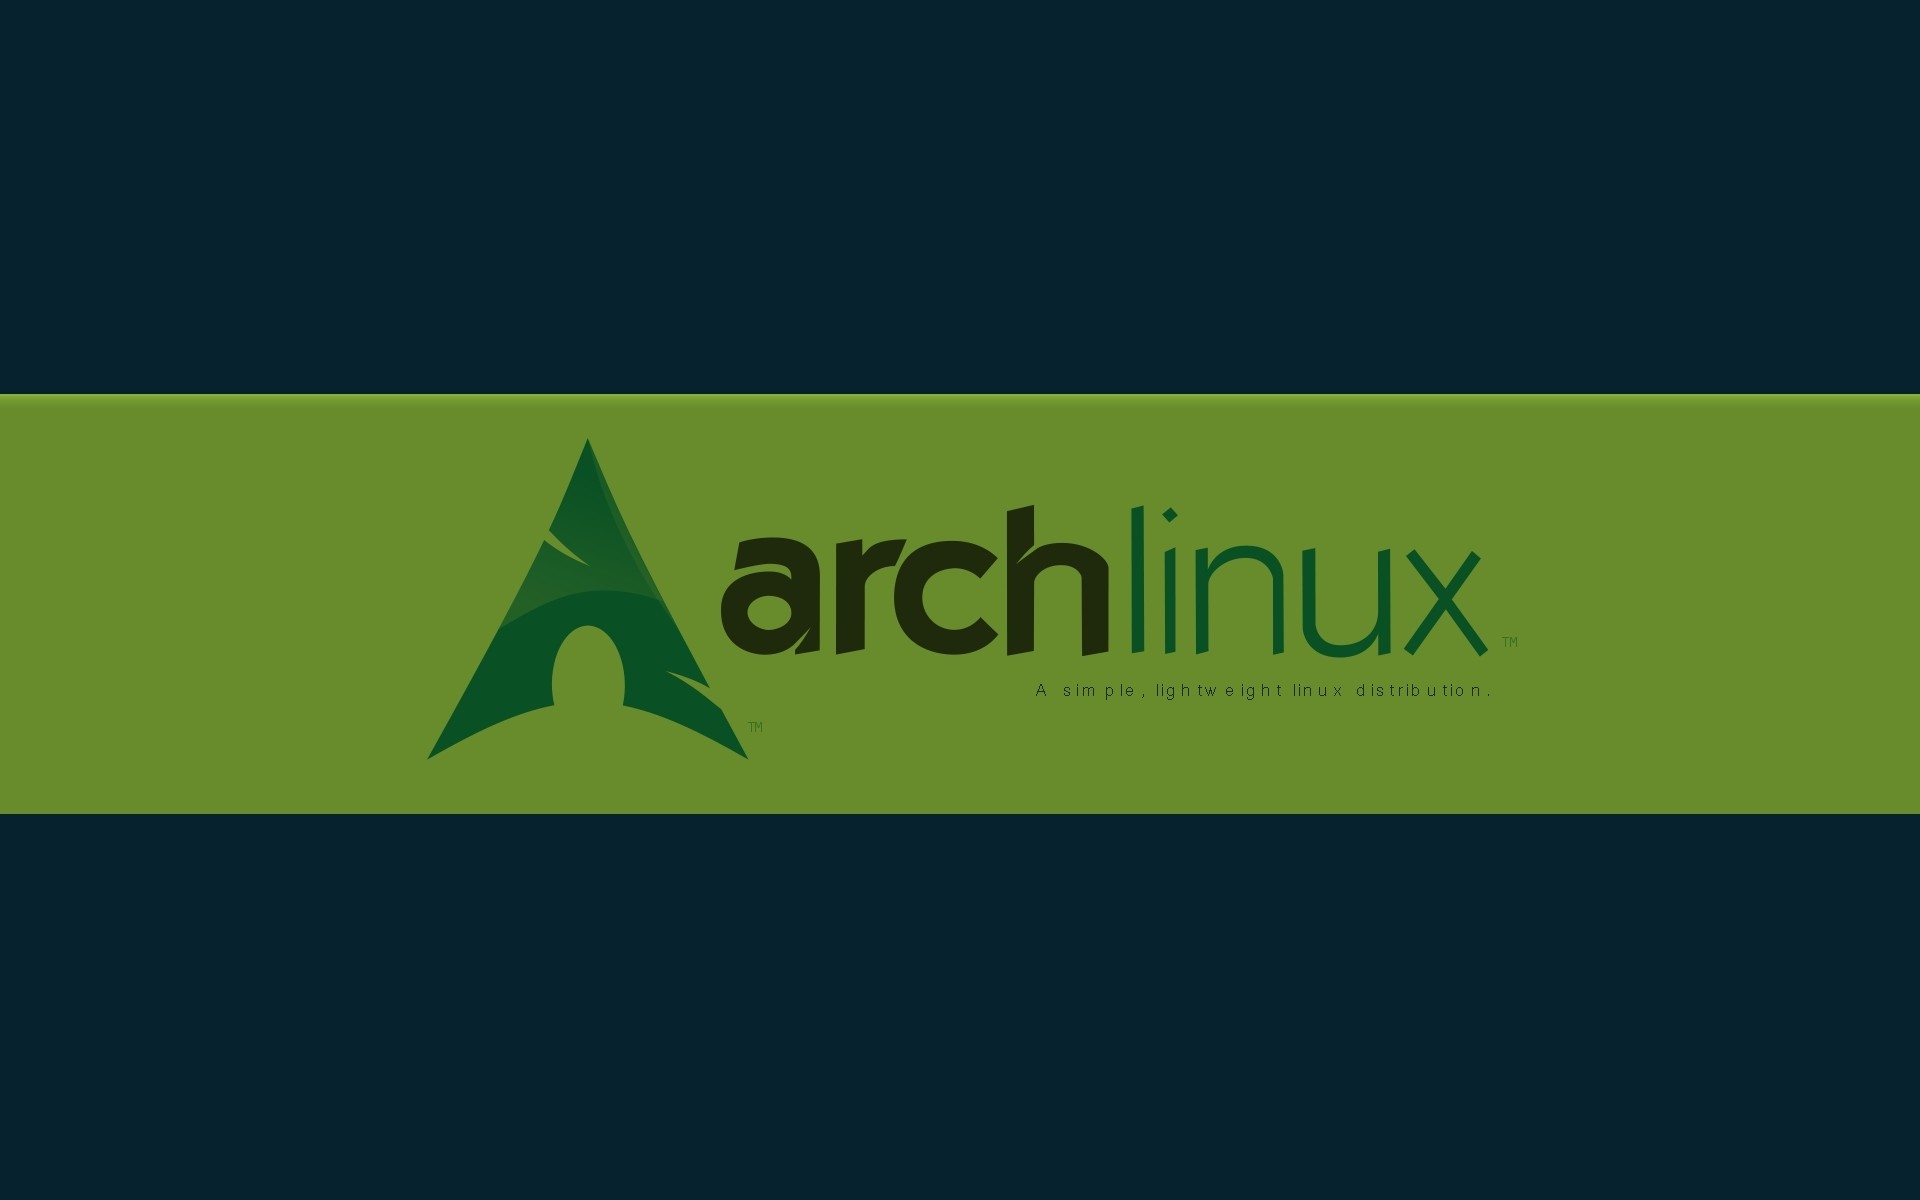 1920x1200 Arch Linux HD Wallpaper 1920x1080 Arch Linux HD Wallpaper 